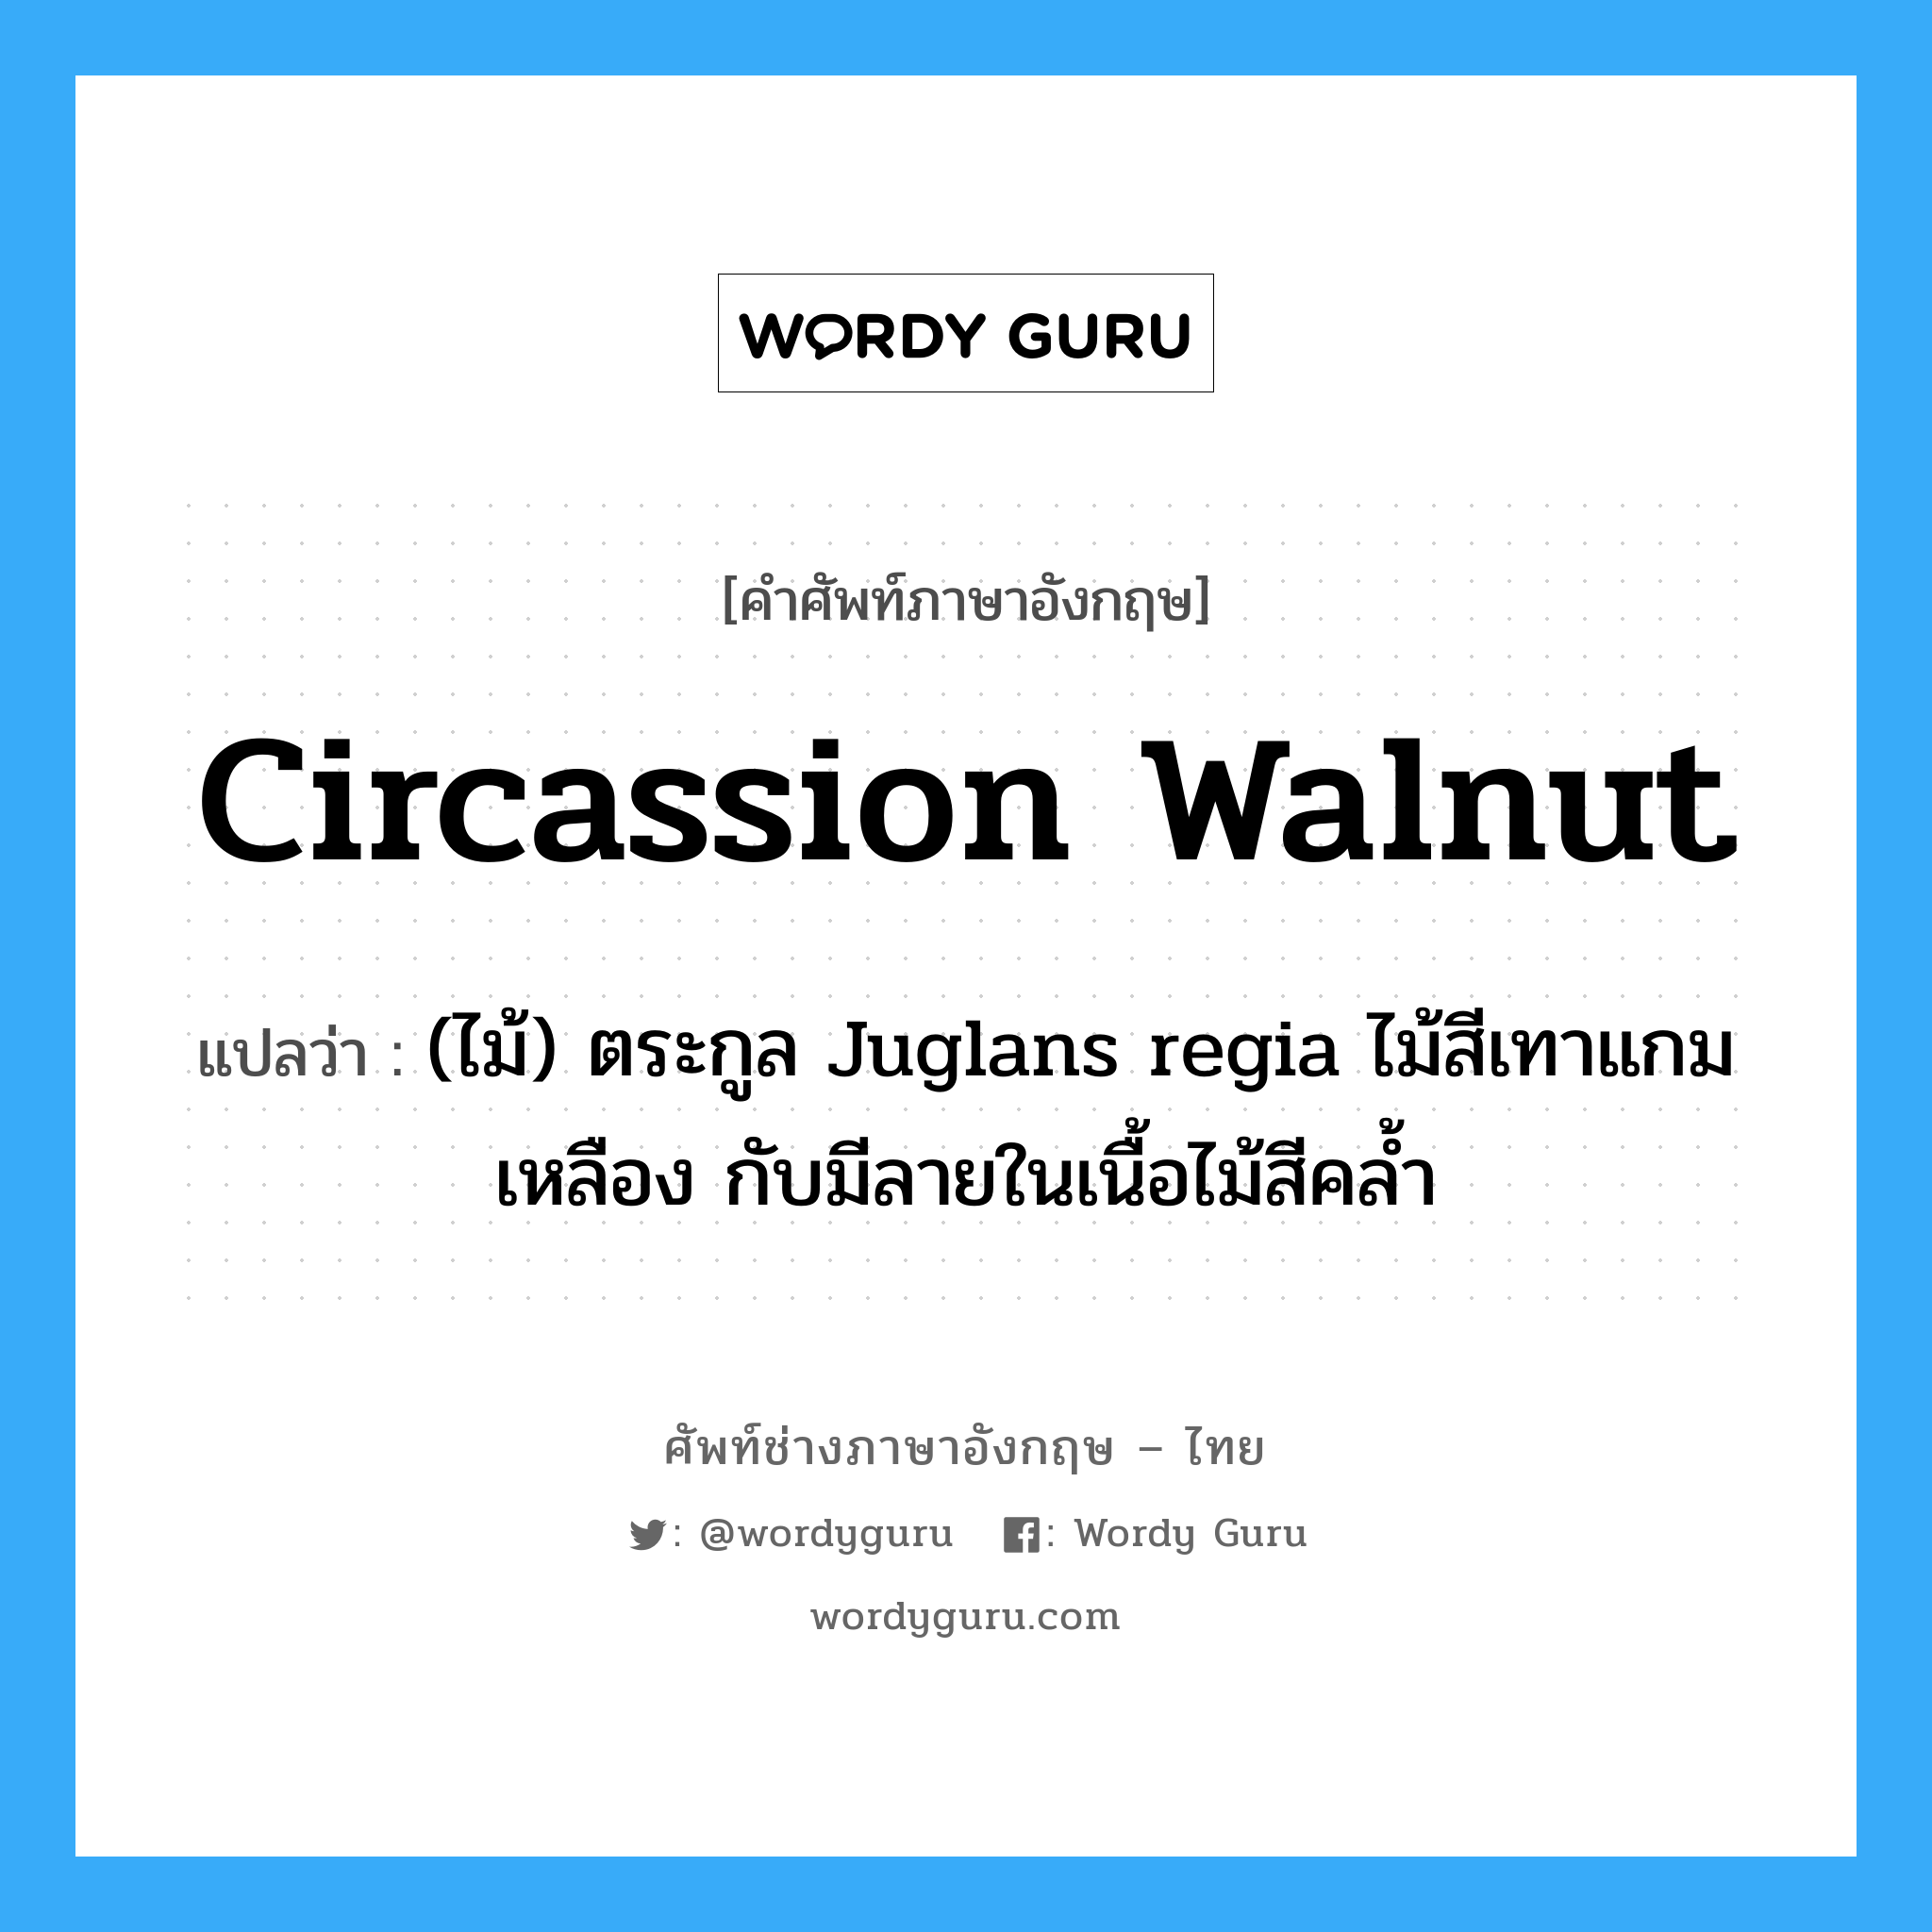 Circassion walnut แปลว่า?, คำศัพท์ช่างภาษาอังกฤษ - ไทย Circassion walnut คำศัพท์ภาษาอังกฤษ Circassion walnut แปลว่า (ไม้) ตระกูล Juglans regia ไม้สีเทาแกมเหลือง กับมีลายในเนื้อไม้สีคล้ำ